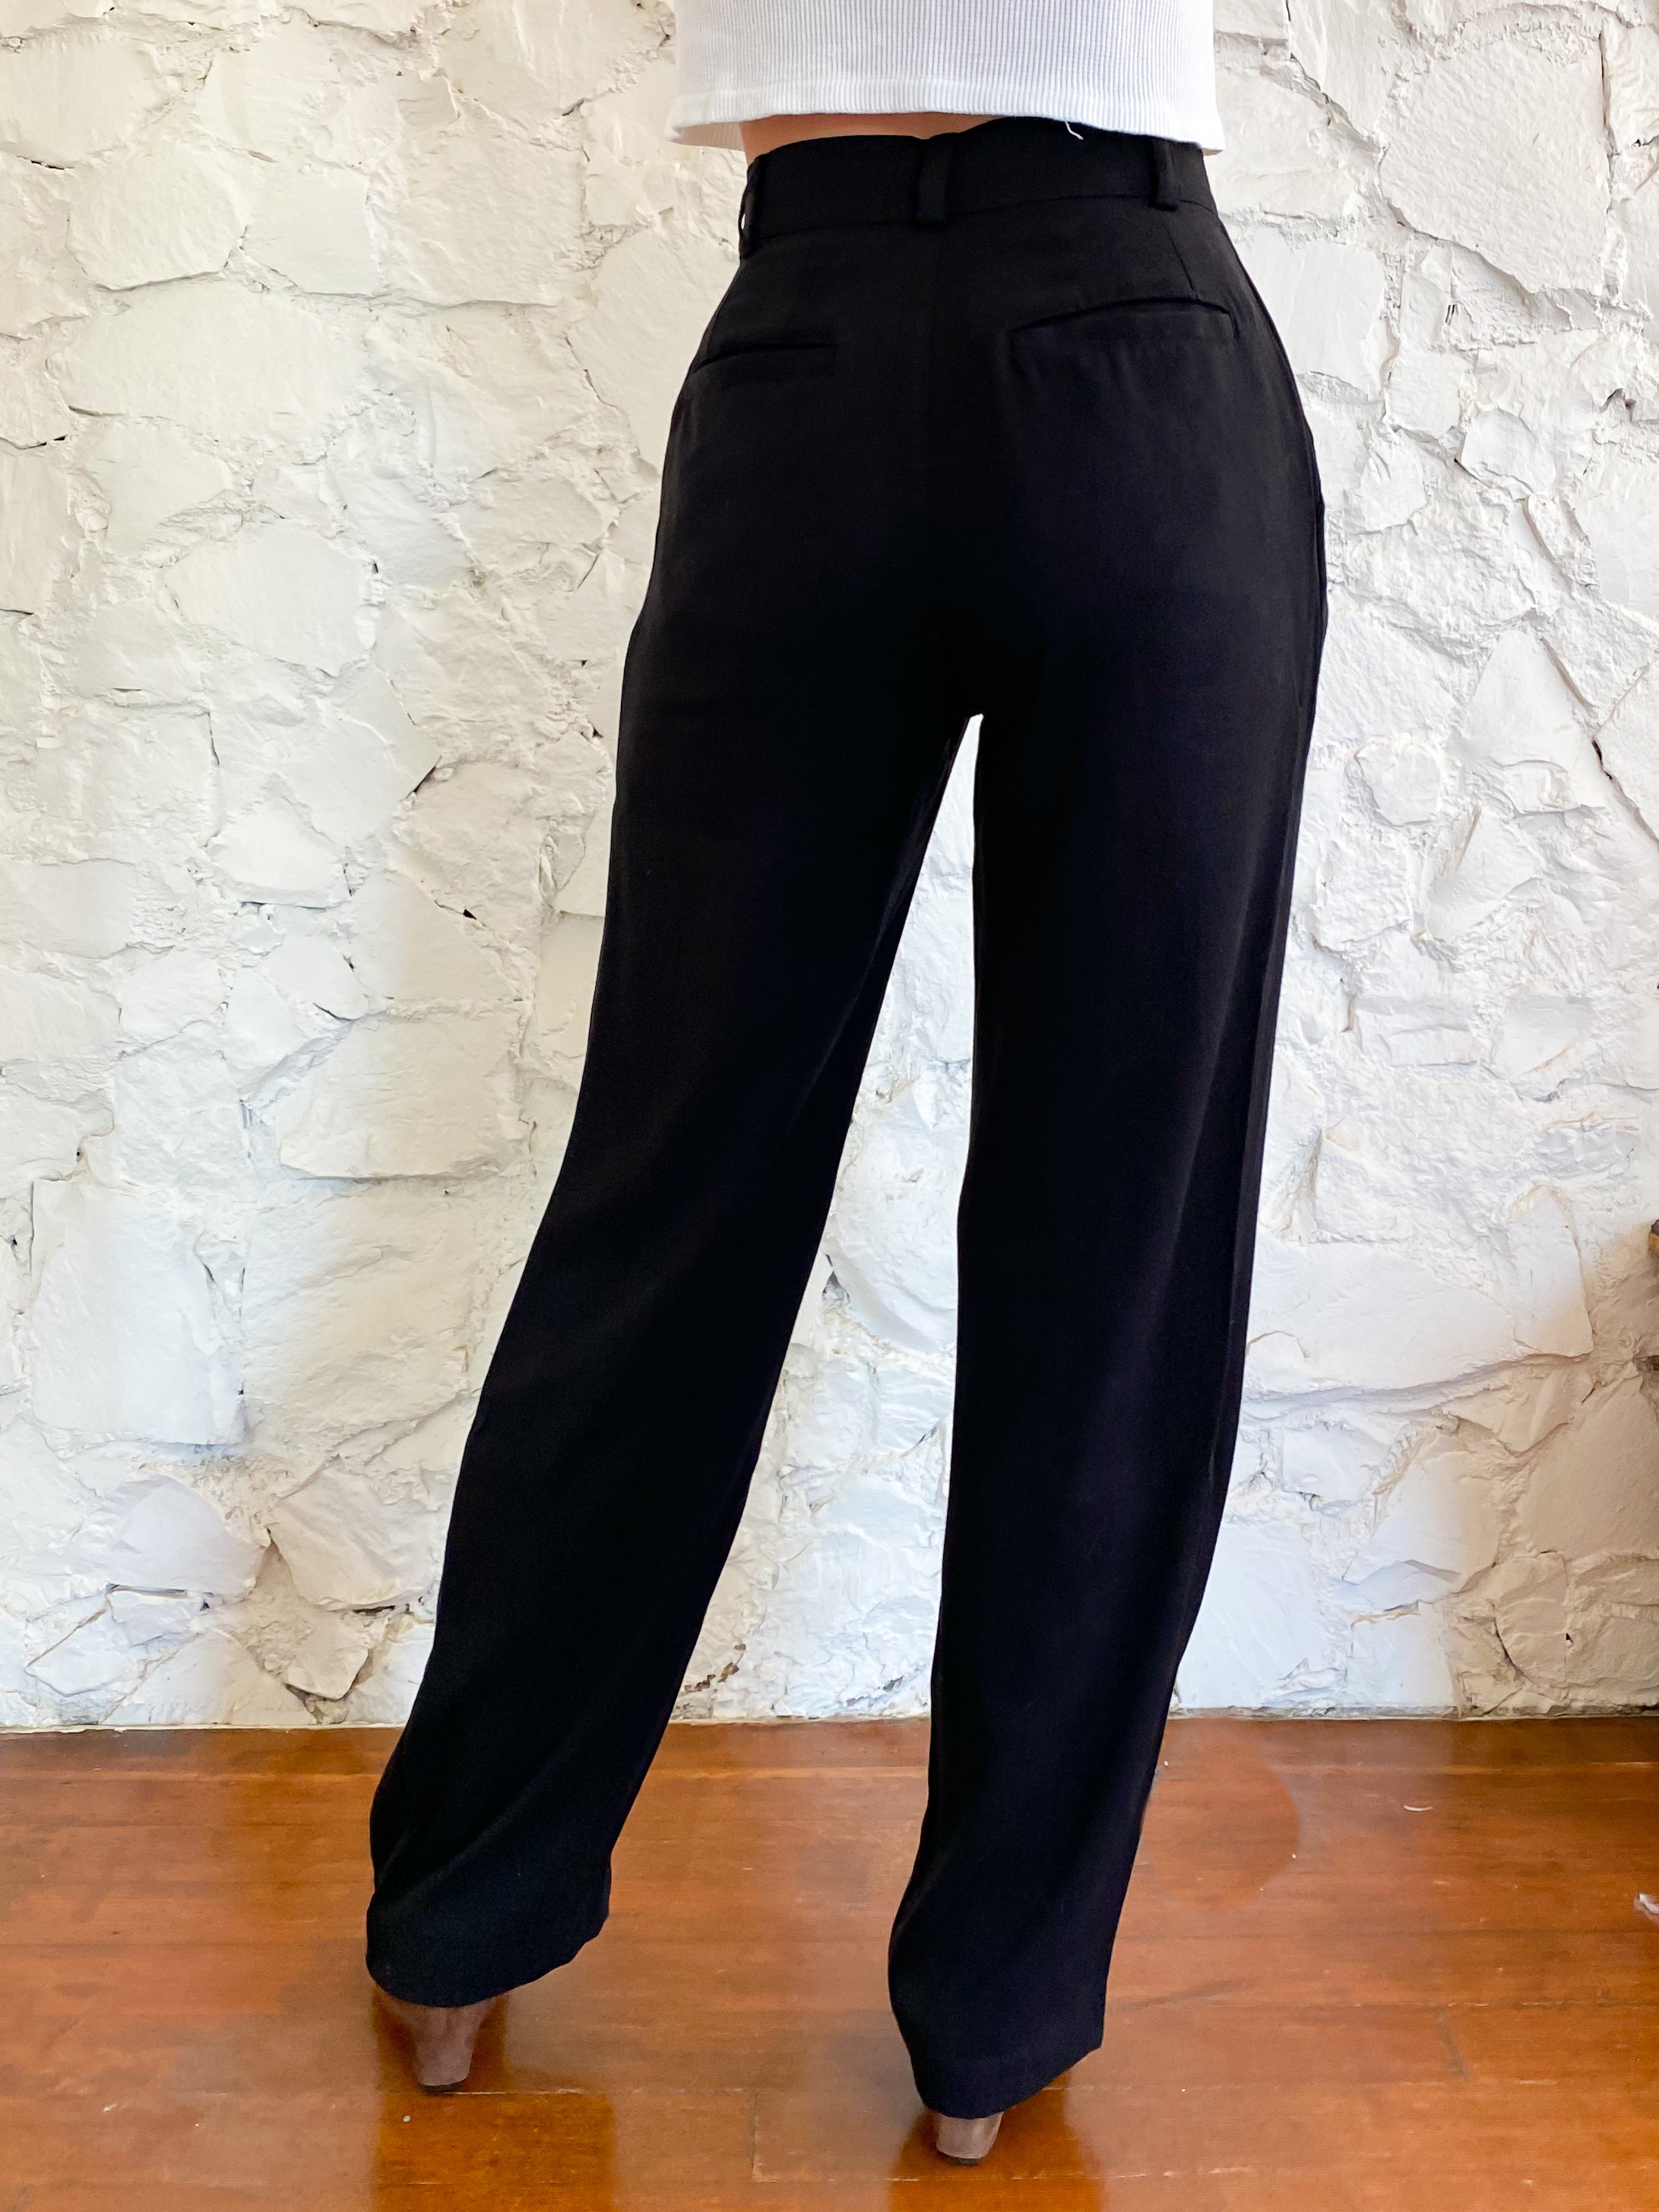 High waisted black dress pants size xs 25” waist, - Depop